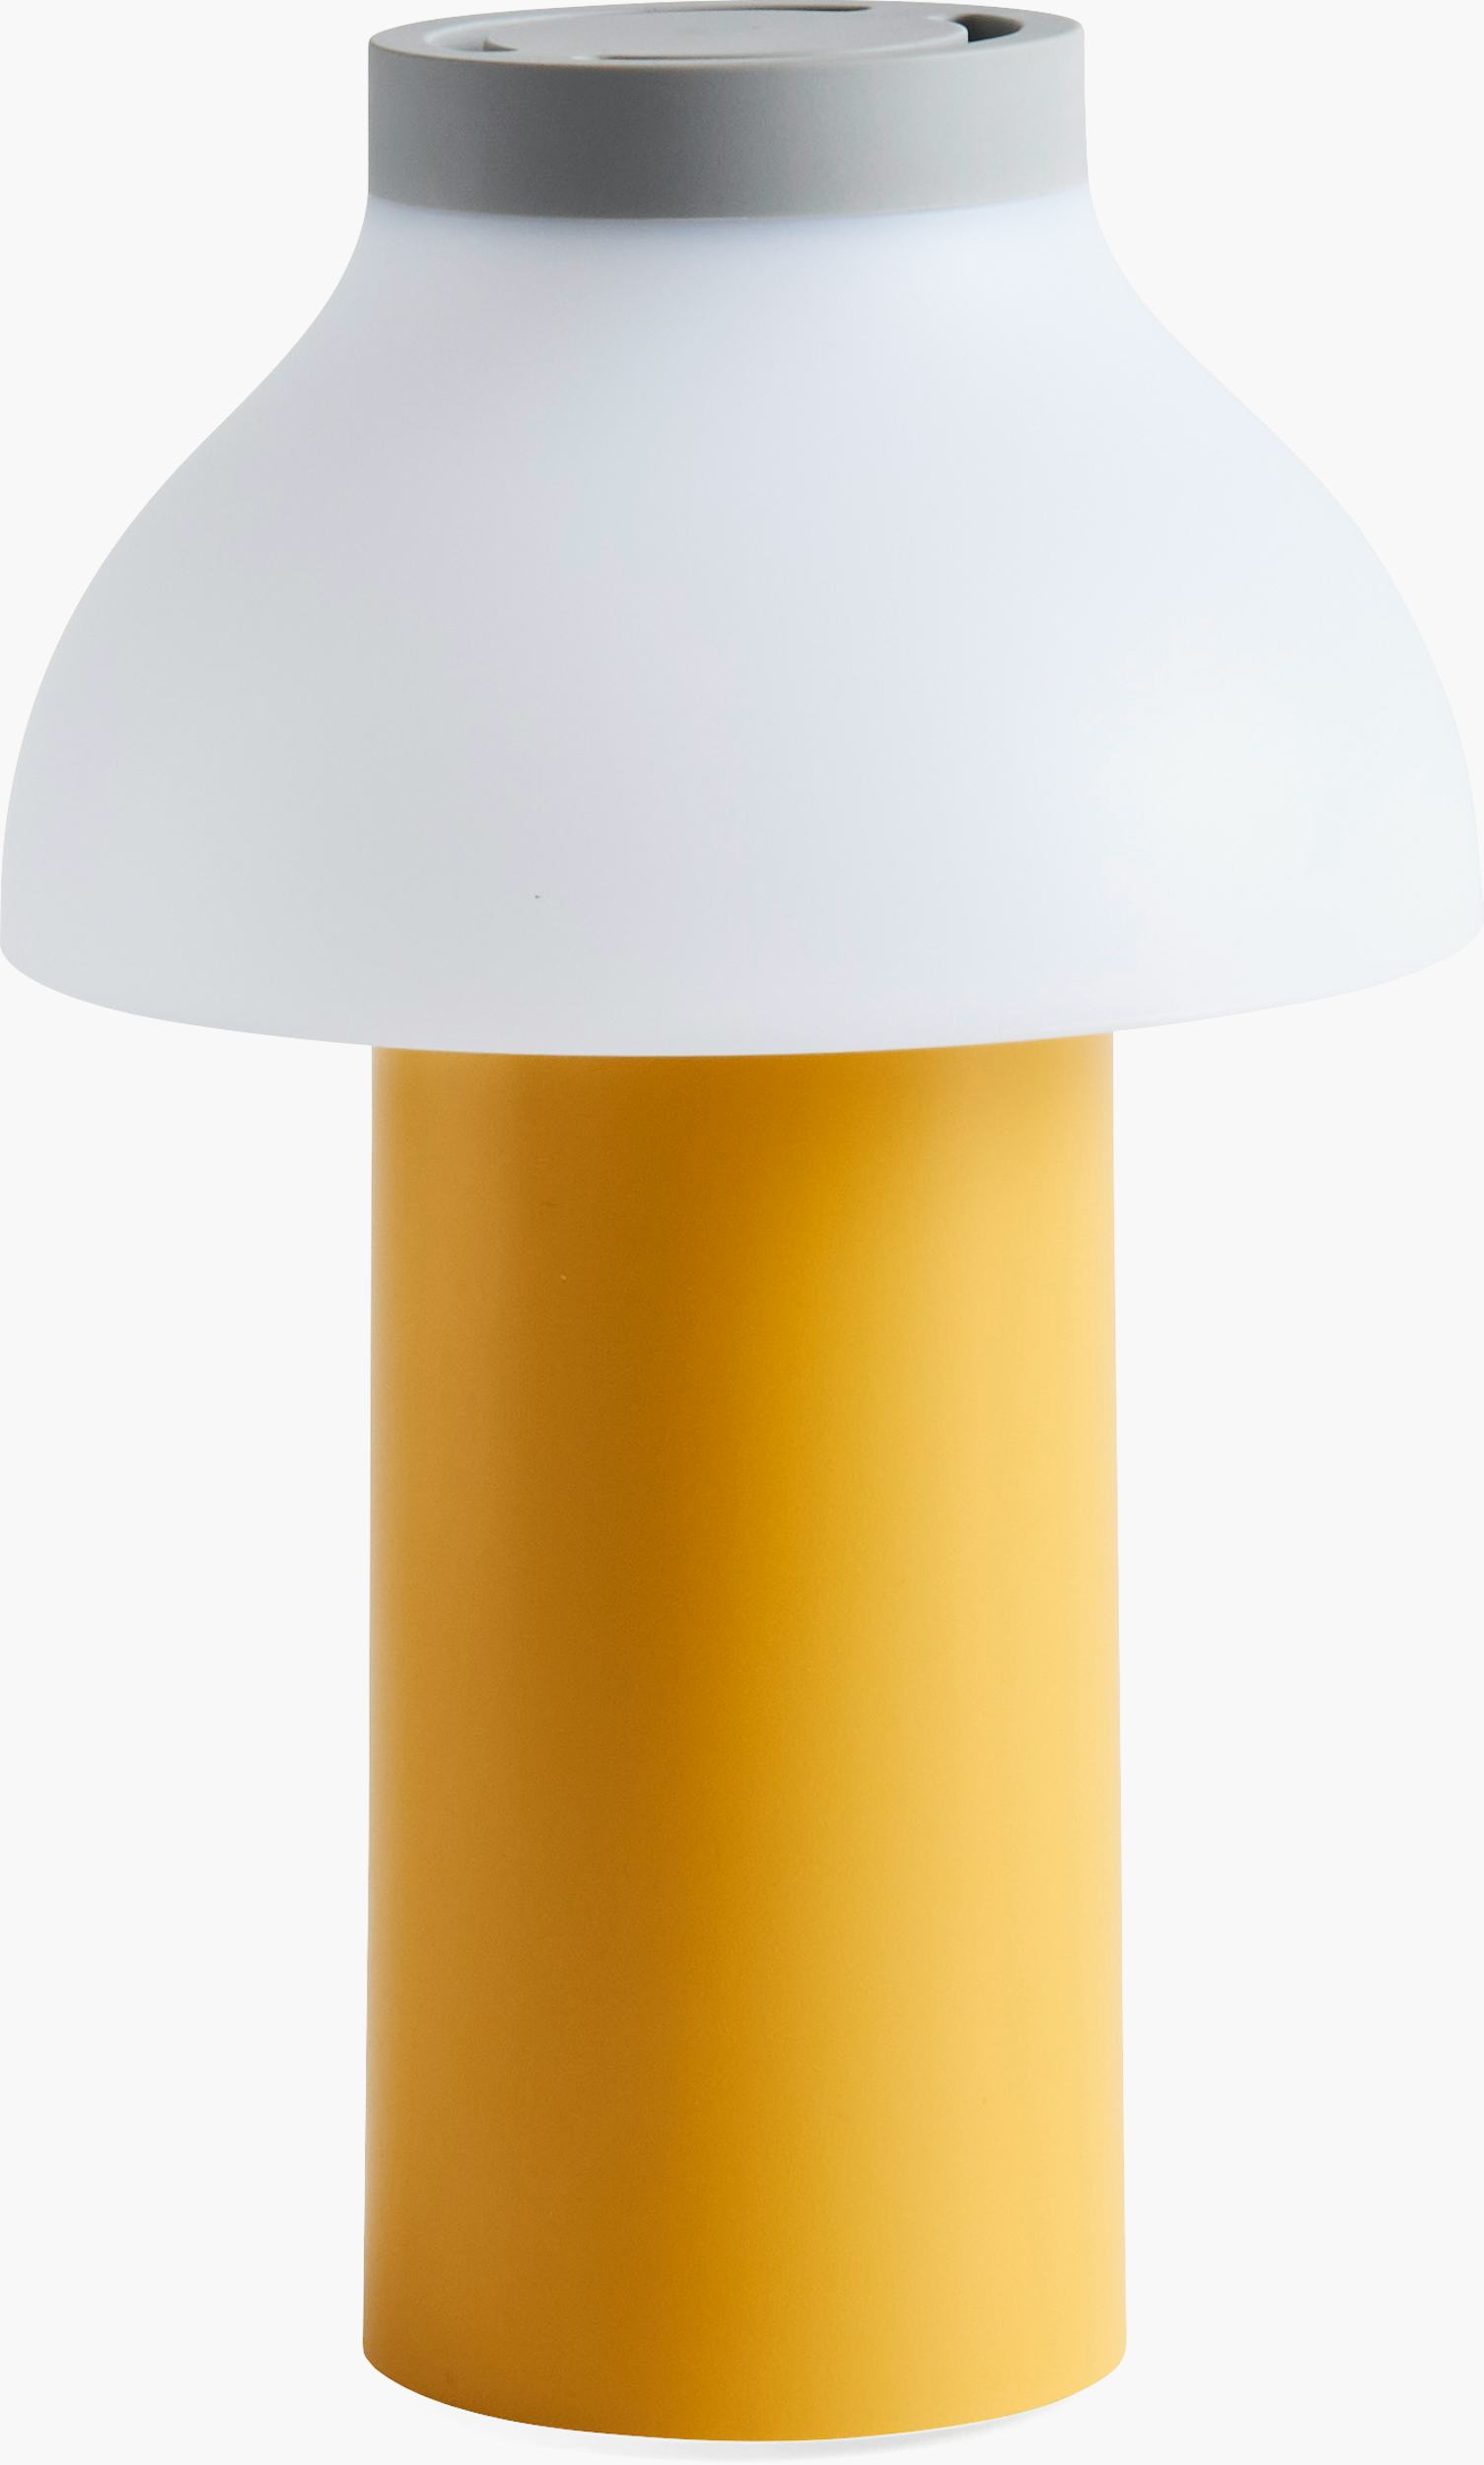 5 Pcs Mini Lamps for Small Spaces Bedside Light Plug Unique